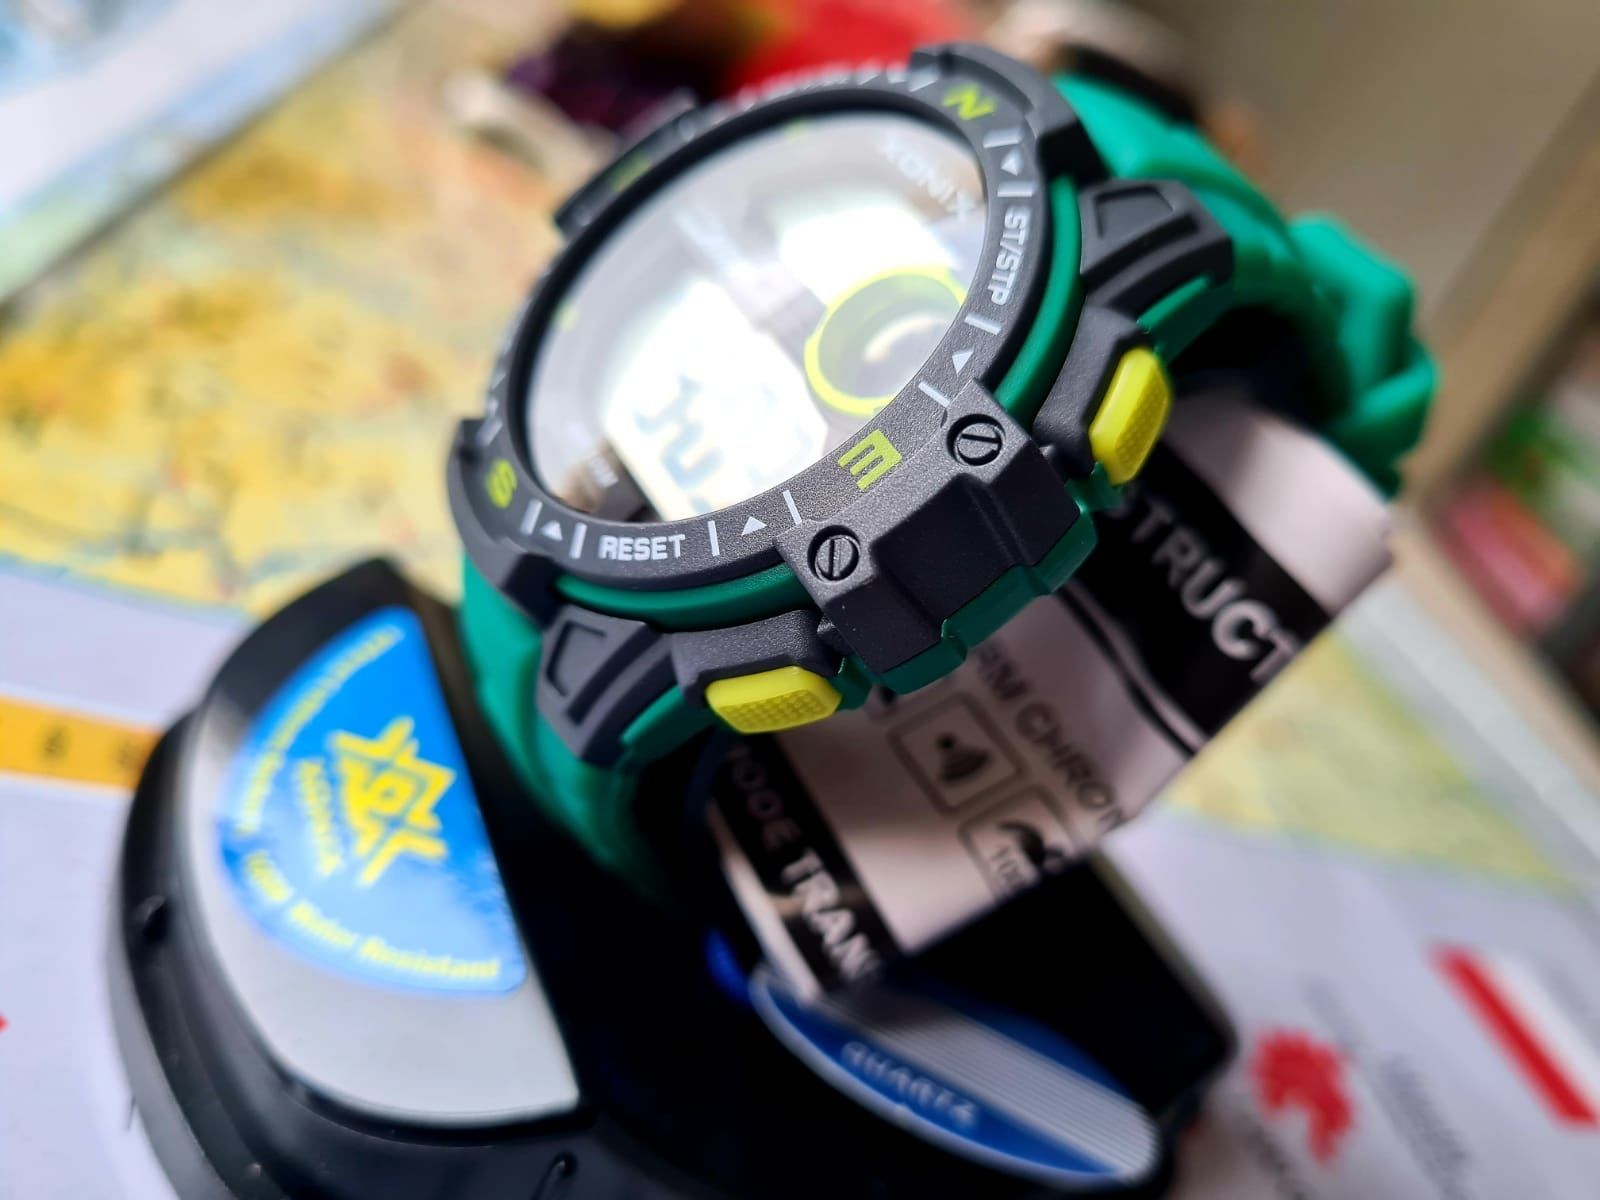 Xonix Męski zegarek zielony pasek nowy modny